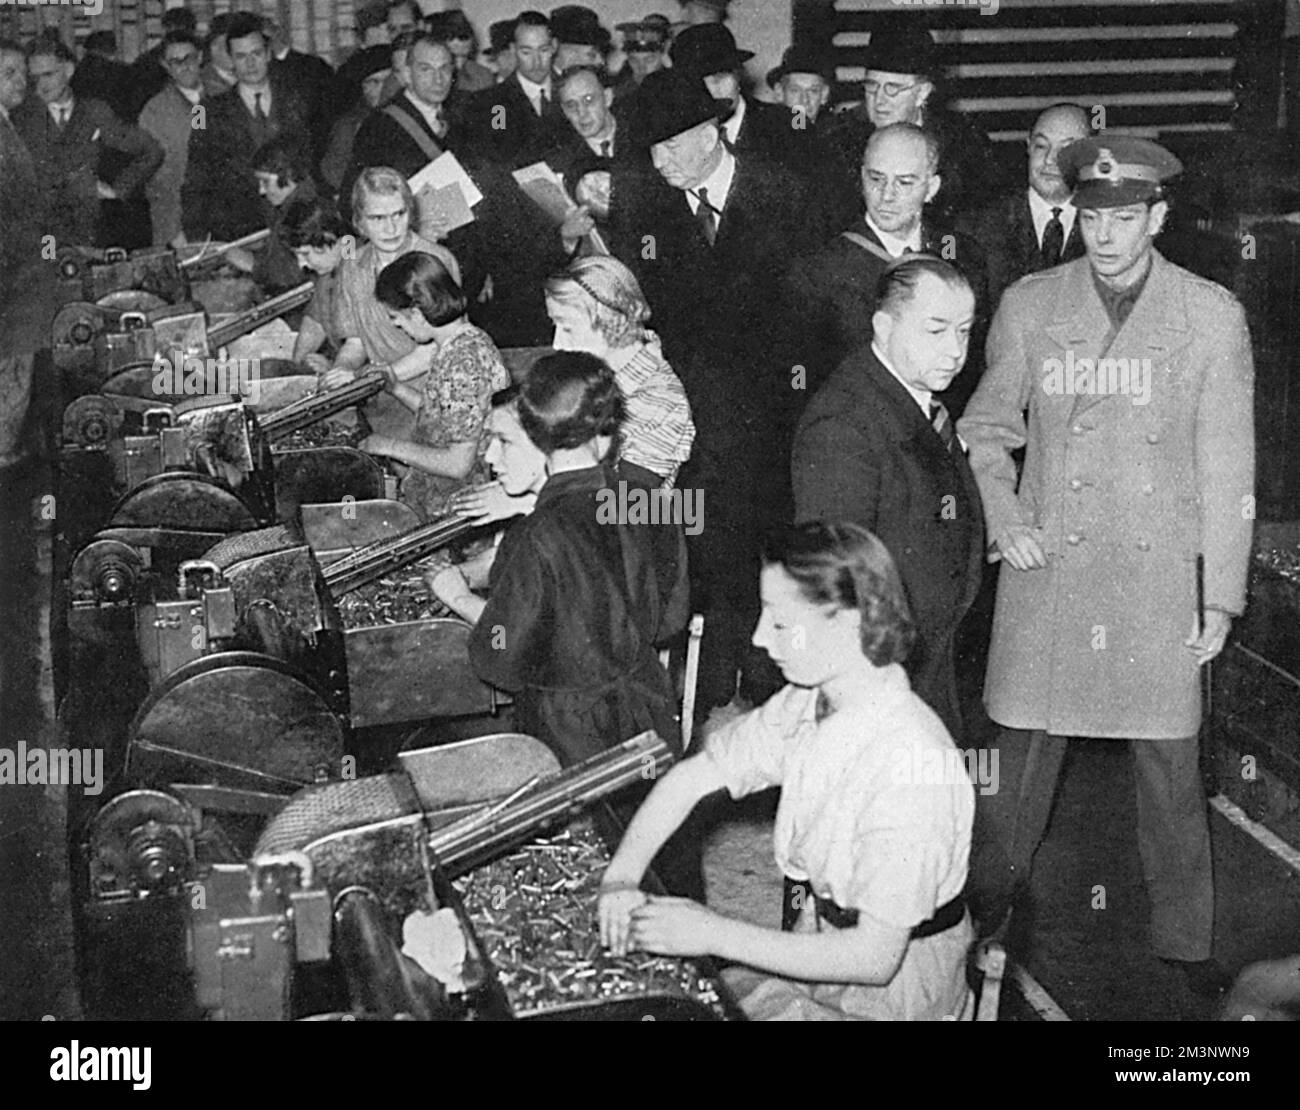 Le roi George VI se voit offrir une visite d'inspection d'une usine de l'Ordnance royale et de voir de première main l'immense effort mis en place pour produire des armes, dans ce cas-ci des armes anti-aériennes et anti-chars. L'image montre le roi regardant certaines des travailleuses dans l'usine de tri des munitions. Date: 1939 Banque D'Images